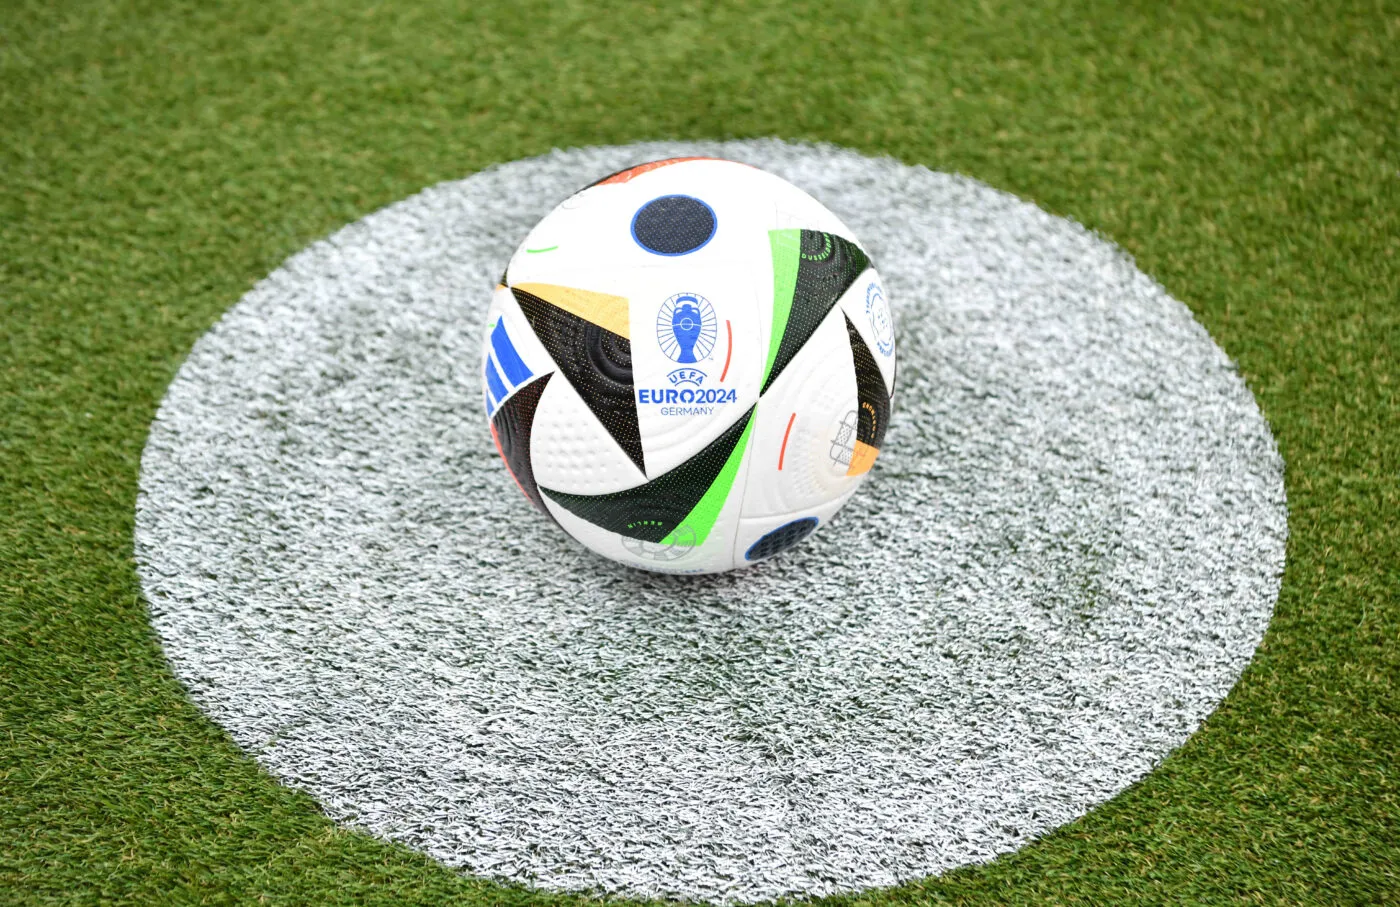 Euro 2024: le ballon Fussballliebe détecte les fautes de main